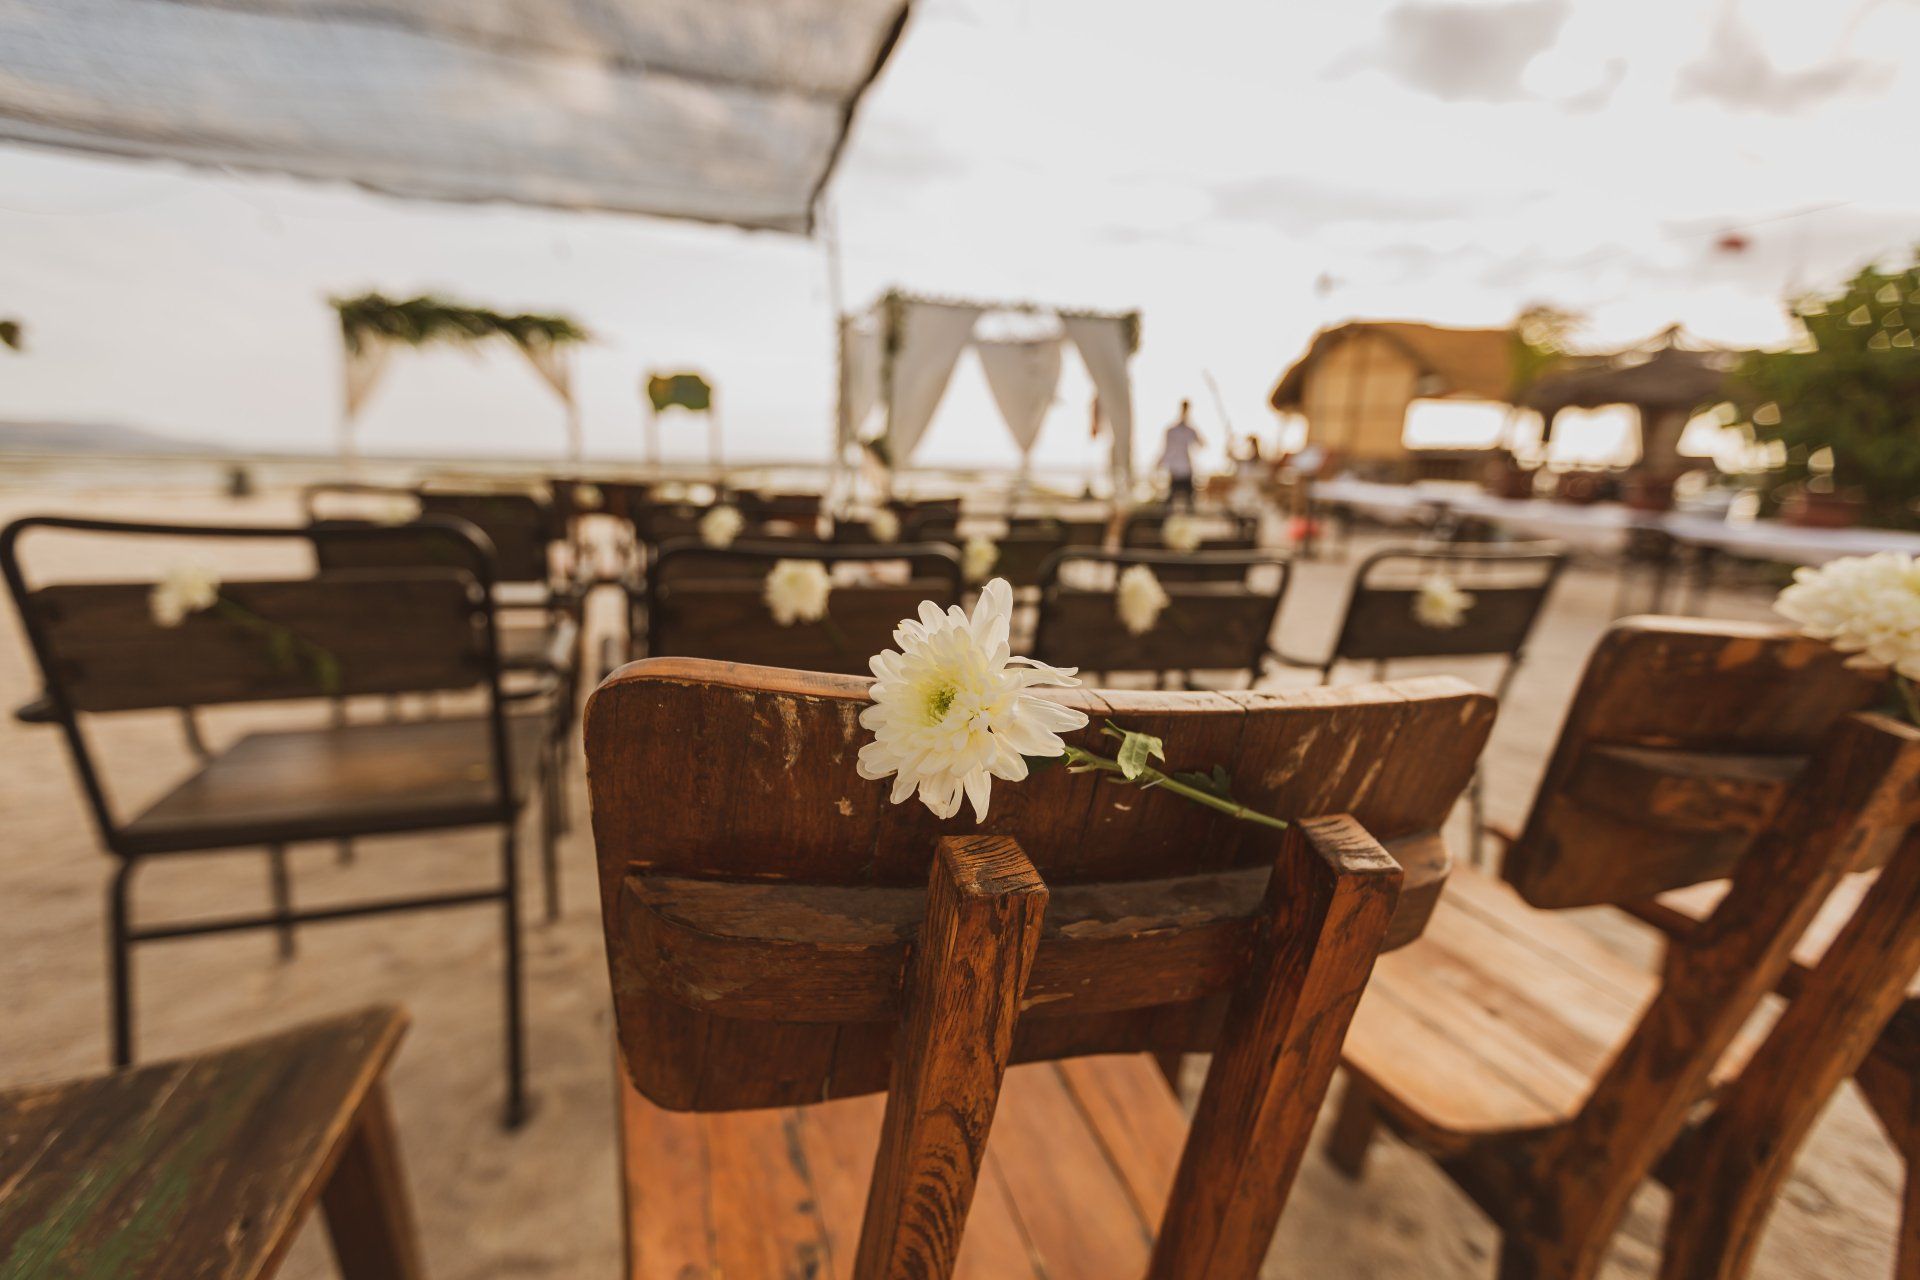 Een onvergetelijke ceremonie op het strand tijdens jullie destination wedding in Italië